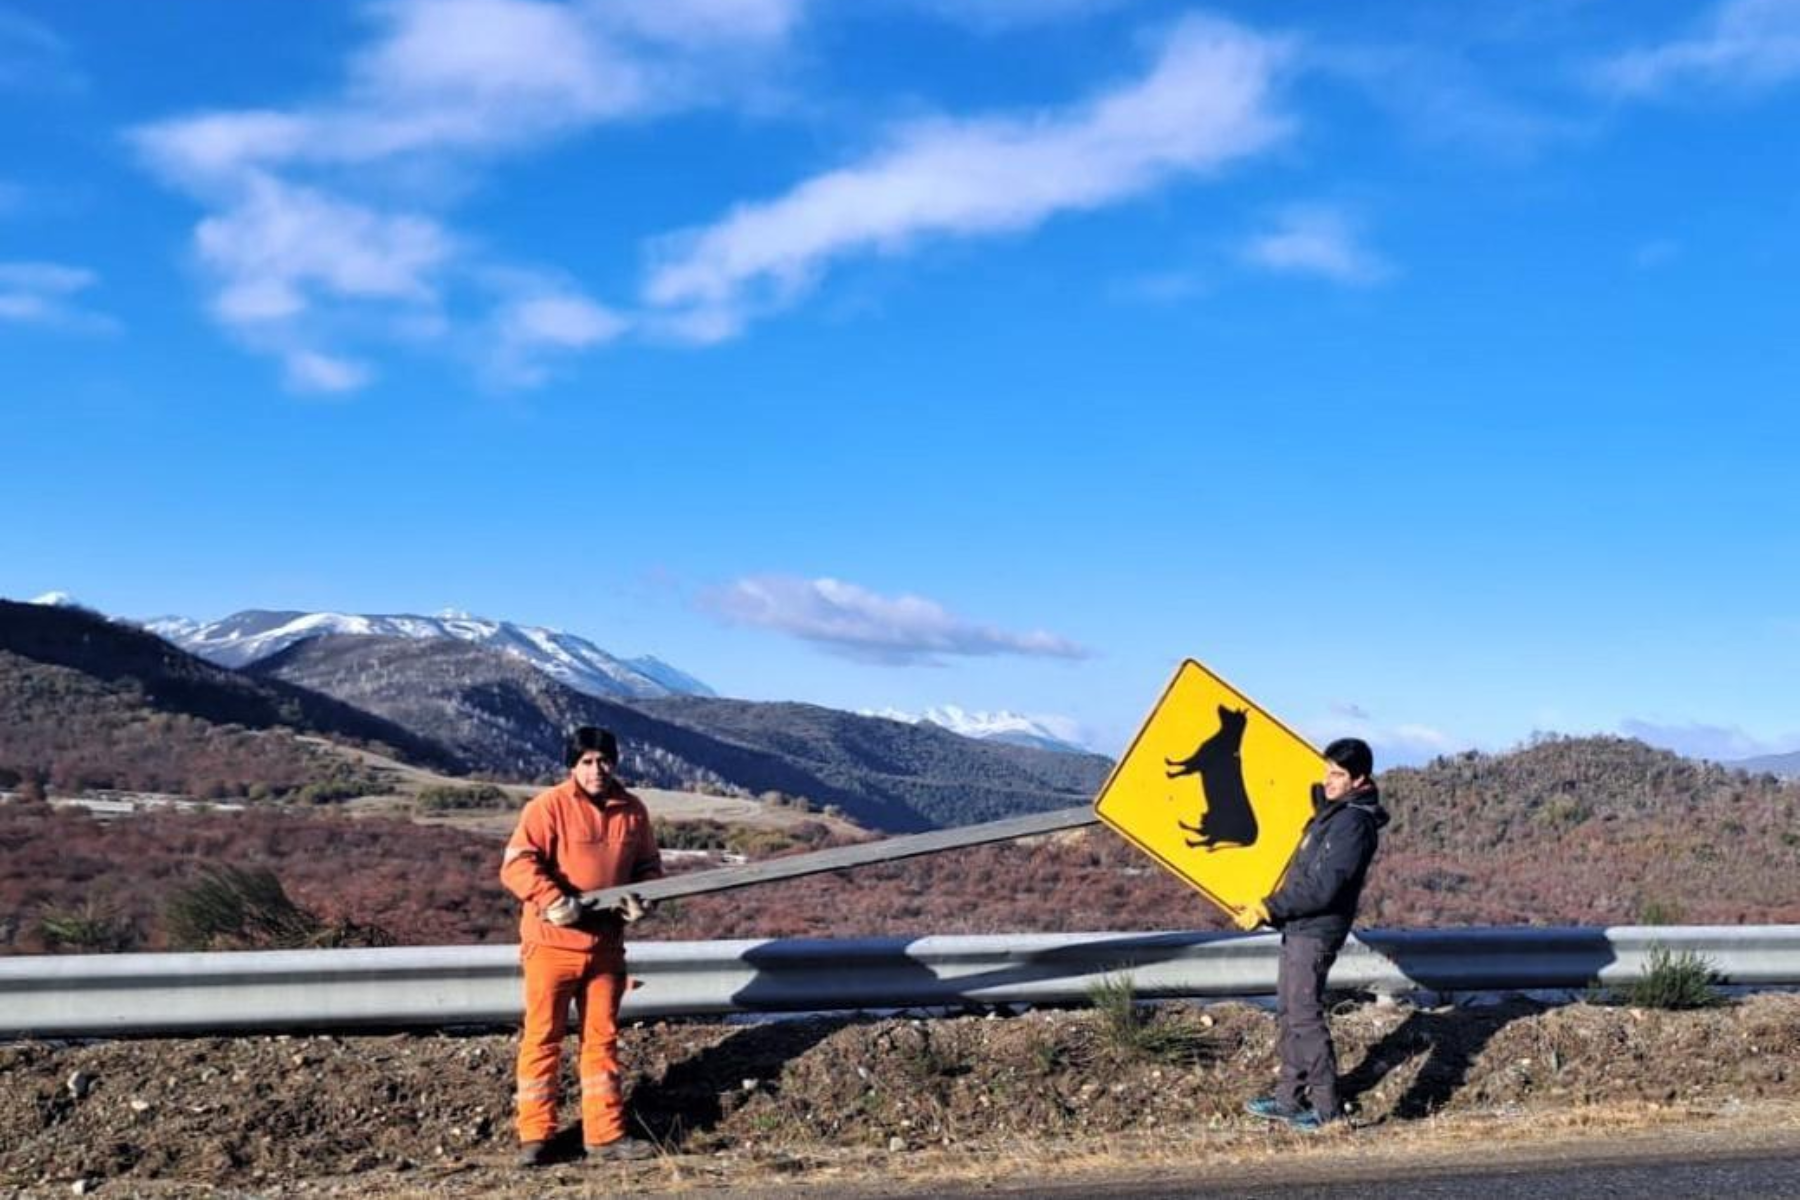 La nueva cartelería preventiva en la Ruta 40 busca mejorar la seguridad vial entre Bariloche y El Bolsón en medio del frío patagónico. Foto Vialidad.